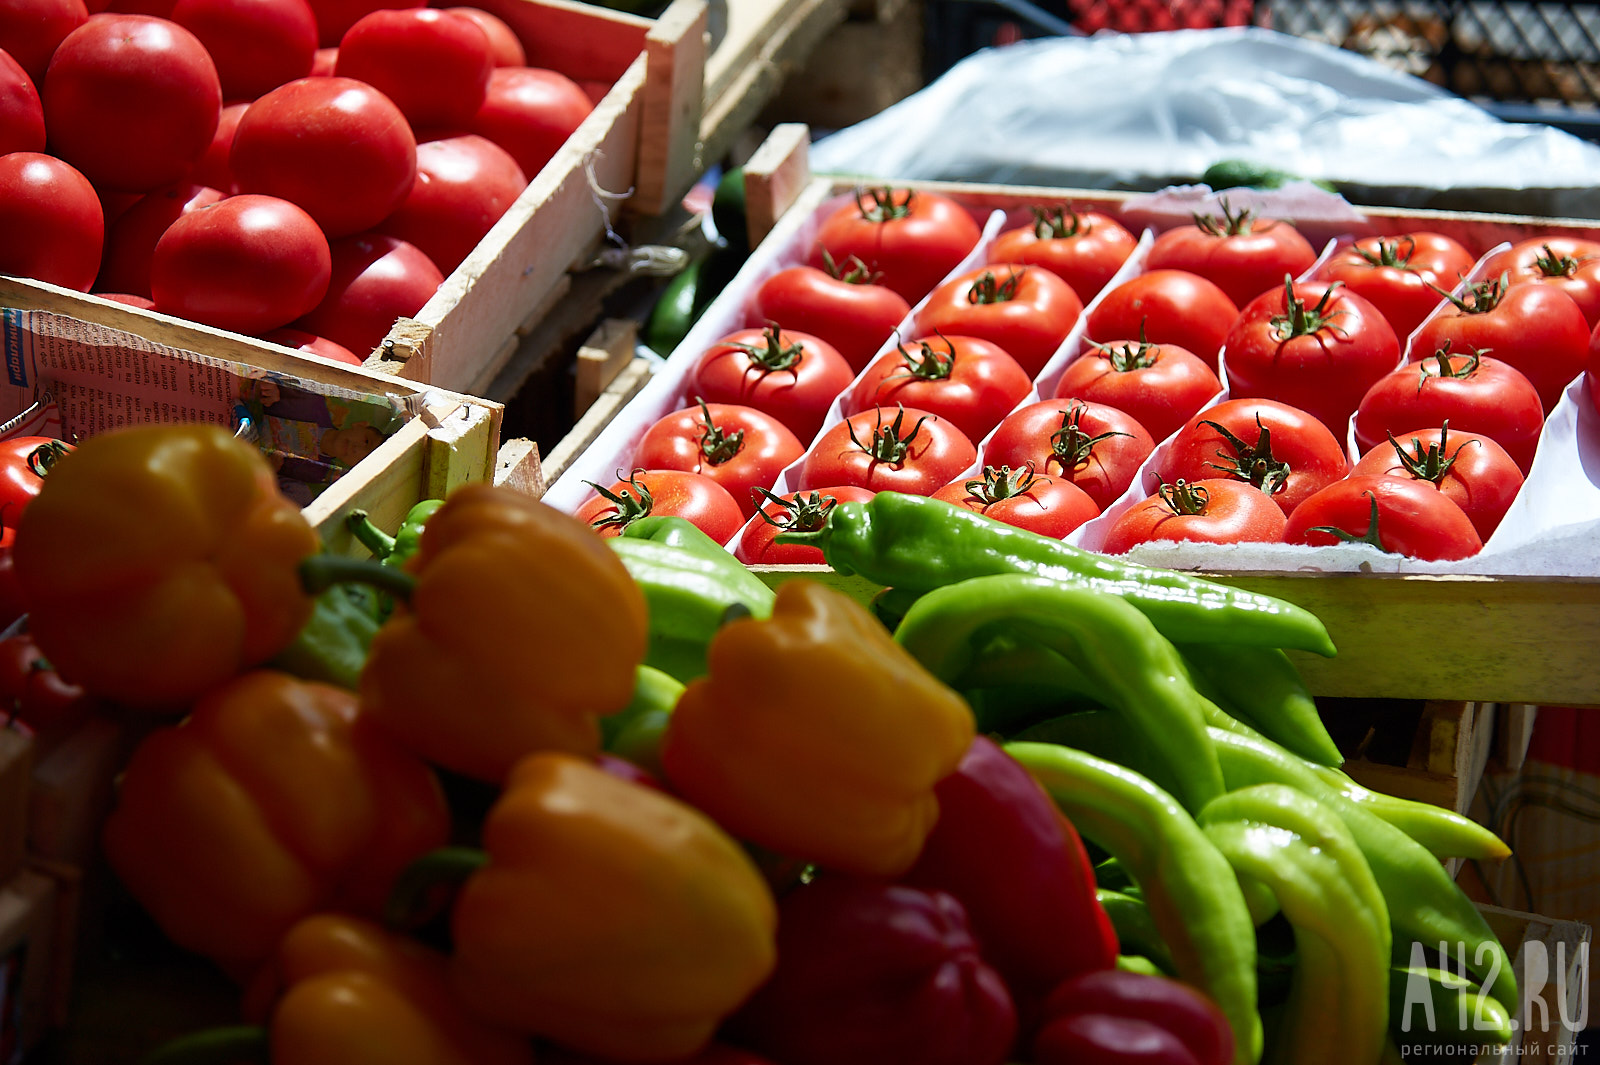 Роспотребнадзор изъял из продажи более 100 килограммов опасных овощей в Кузбассе